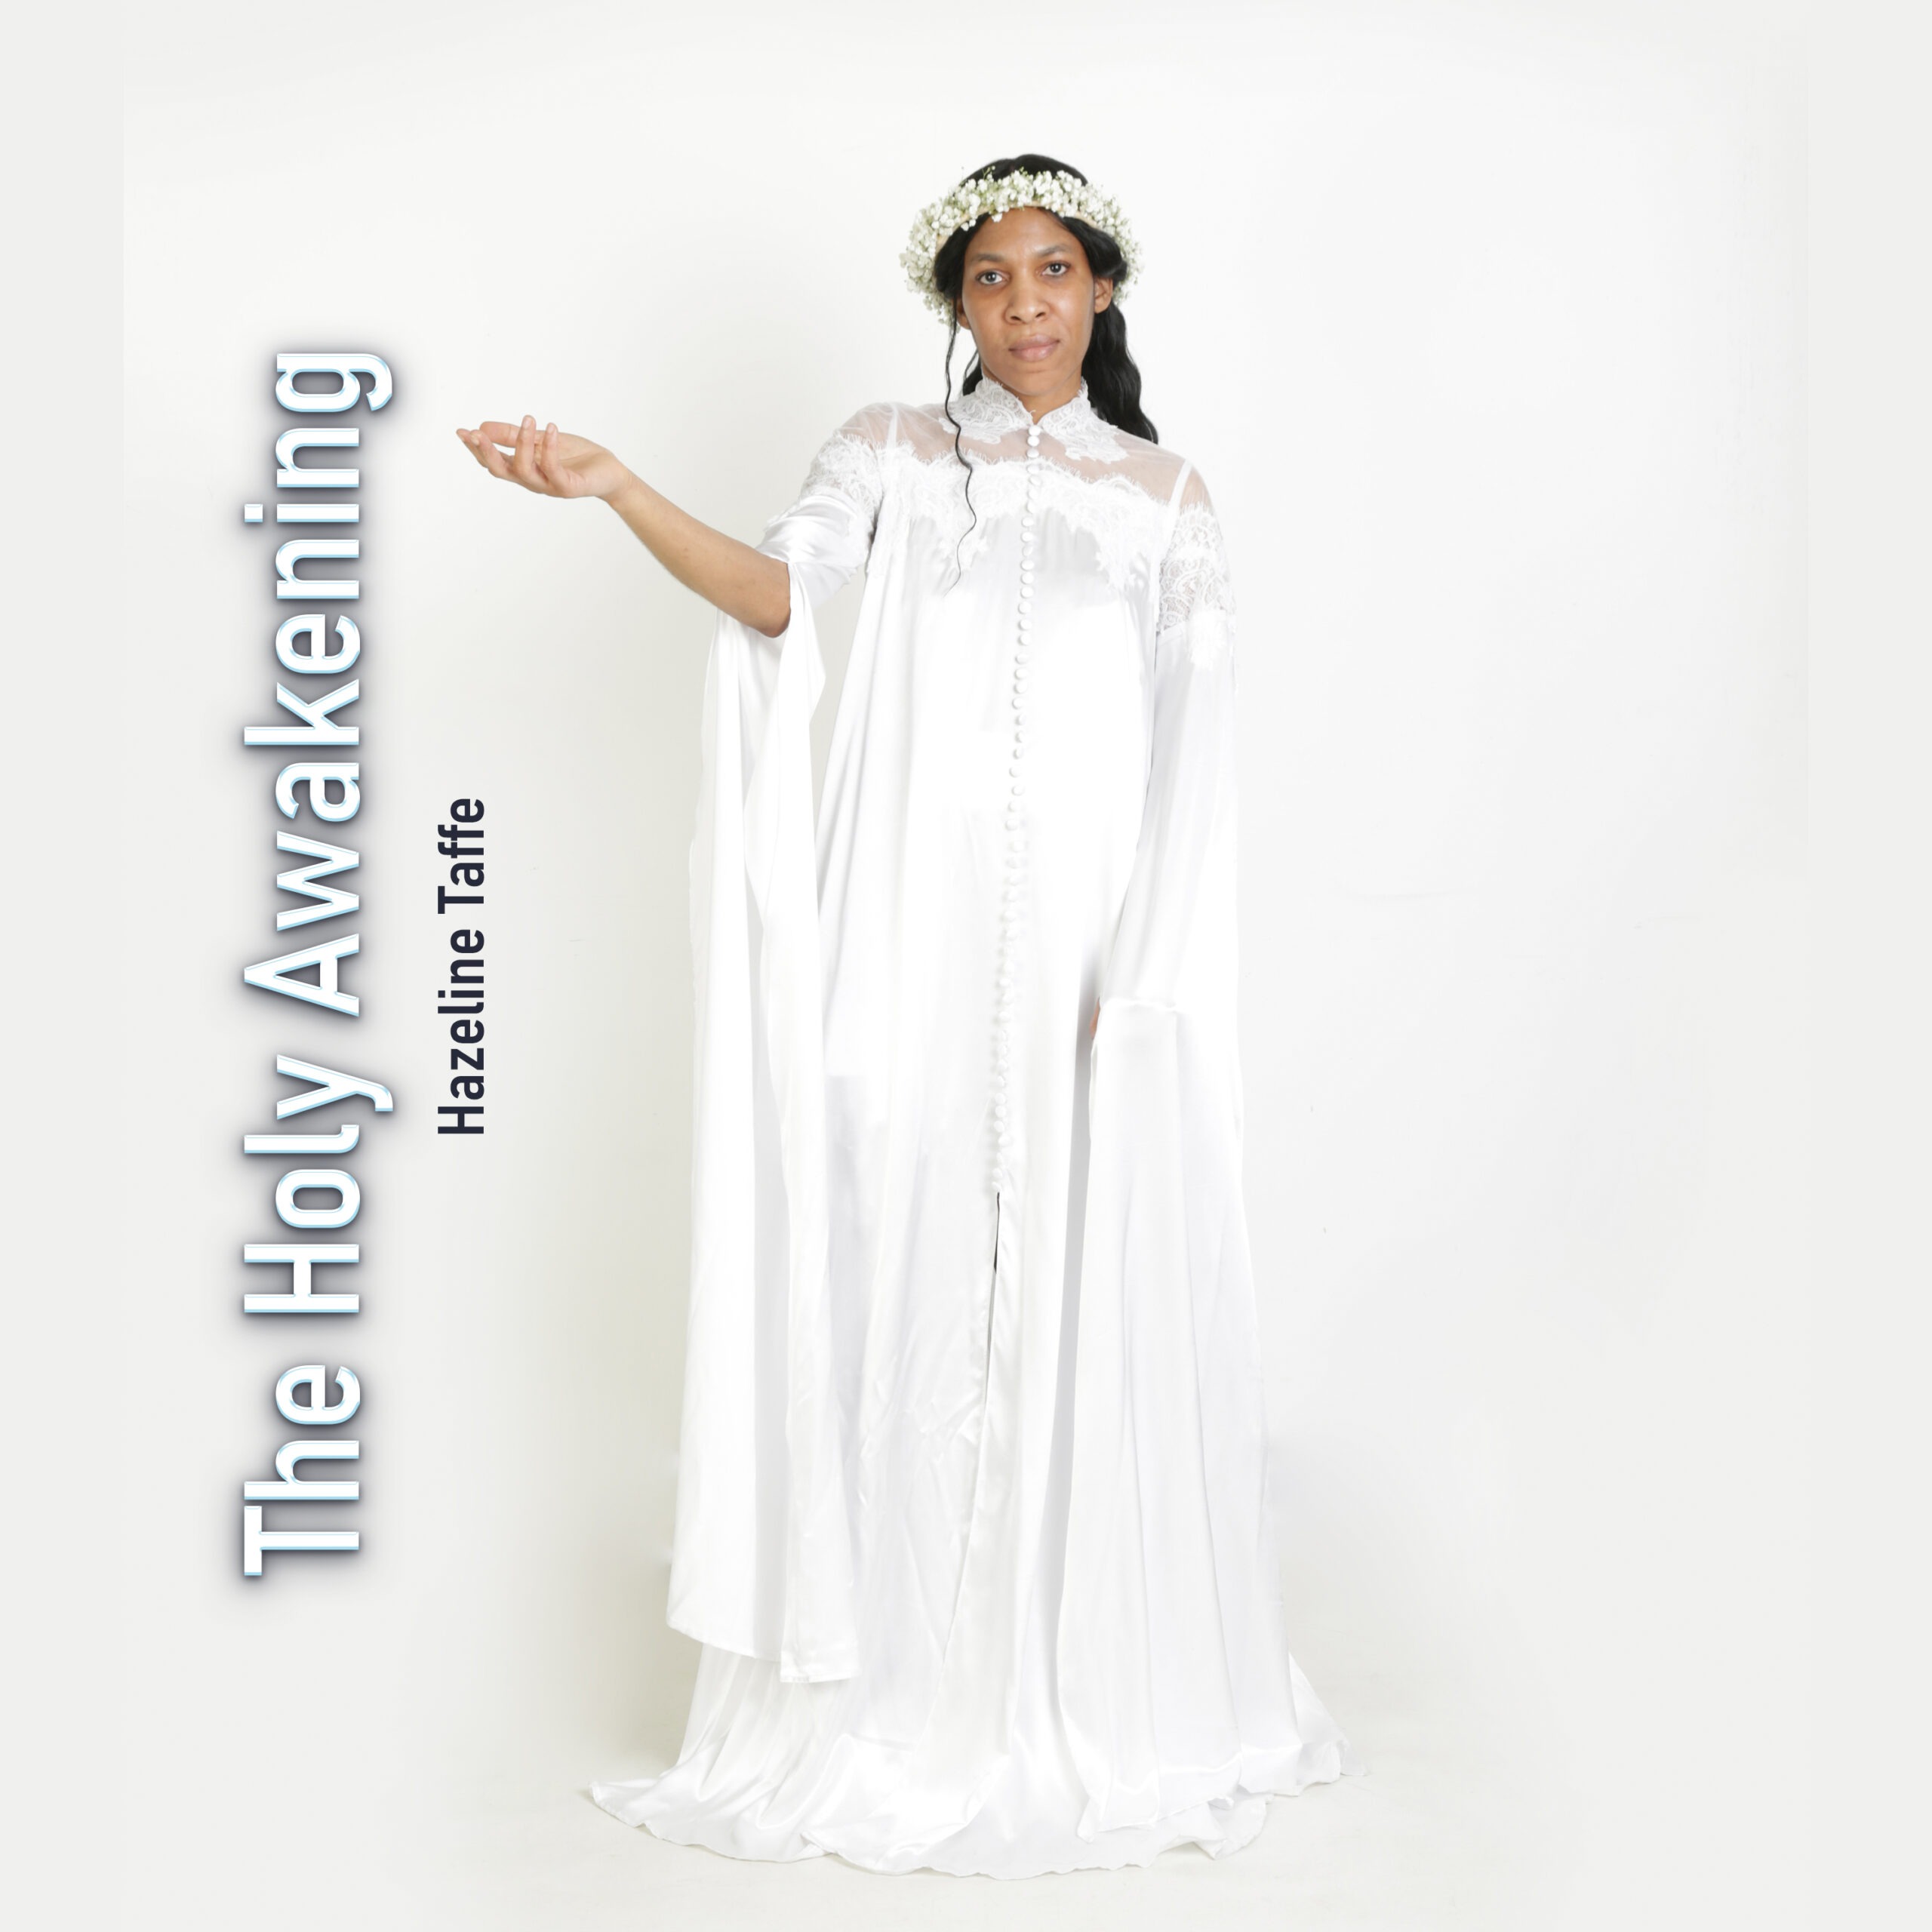 Inspiring Singer Hazeline Taffe Releases Her Latest Album Called “The Holy Awakening”￼